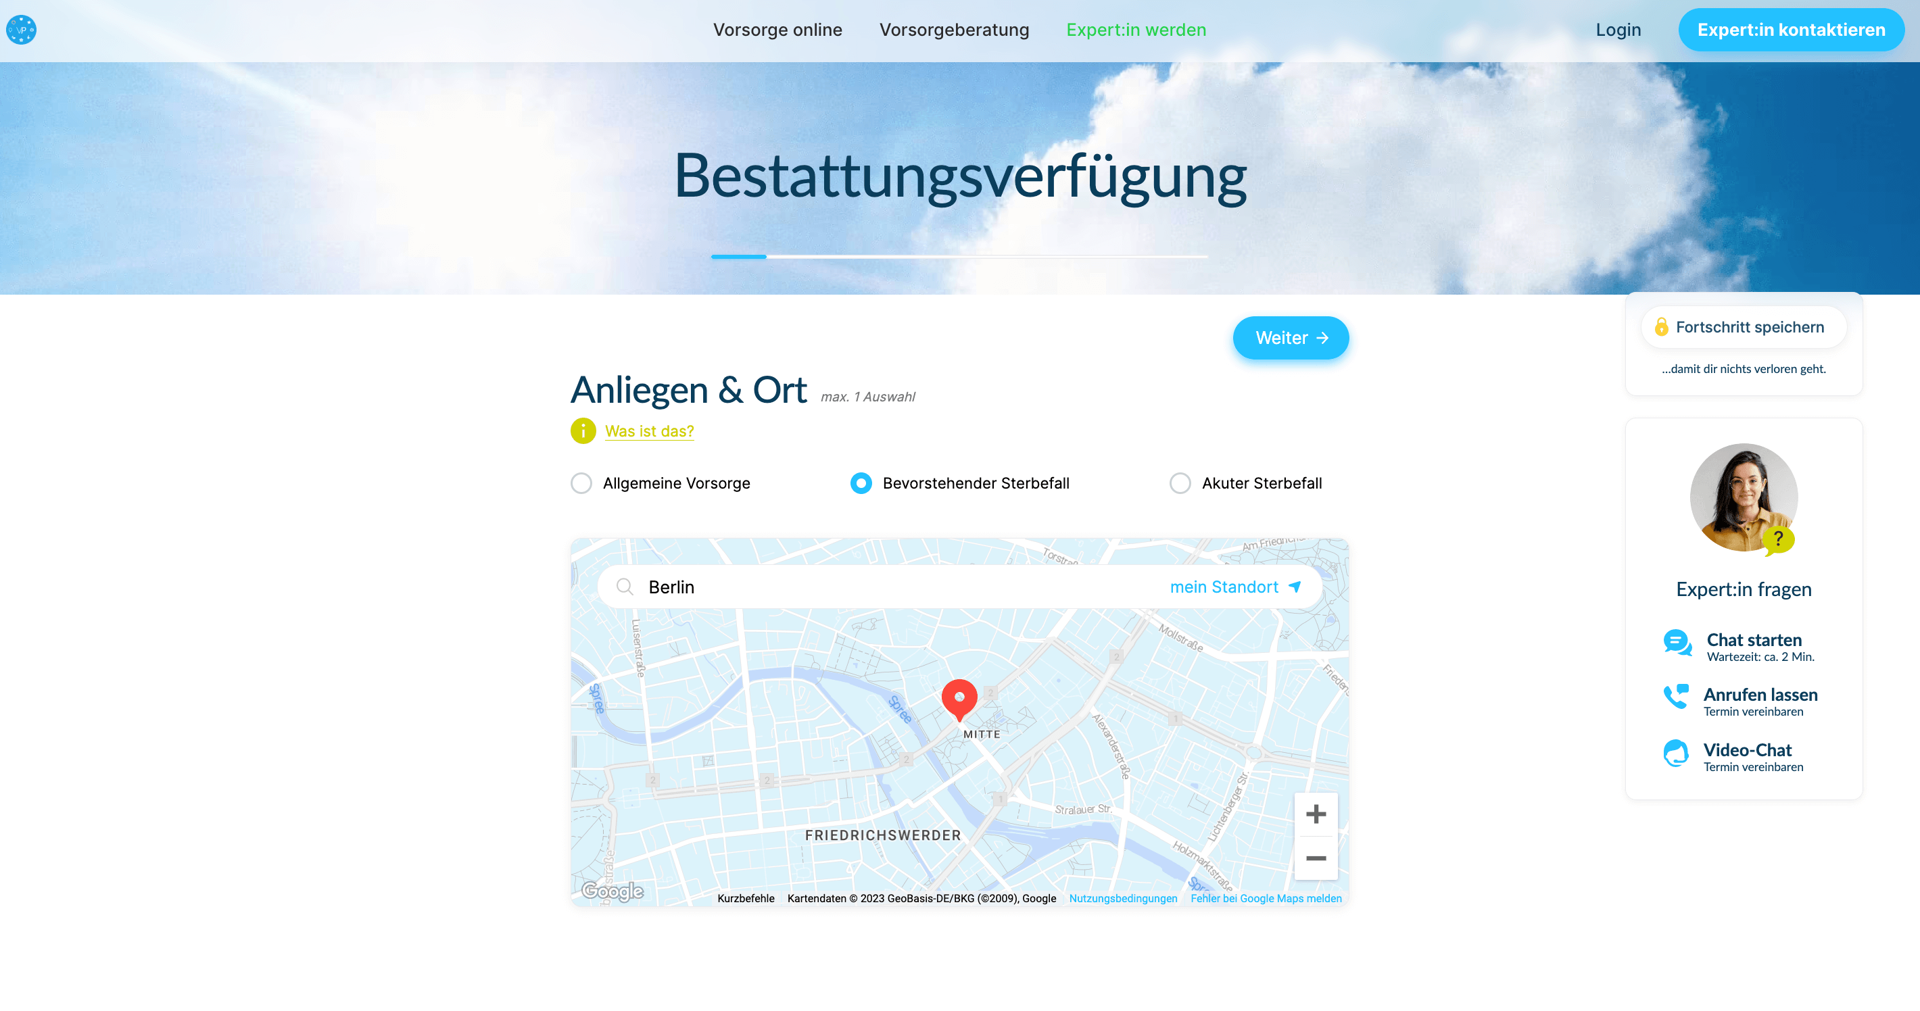 Startbildschirm der Online-Strecke “Bestattungsverfügung”.